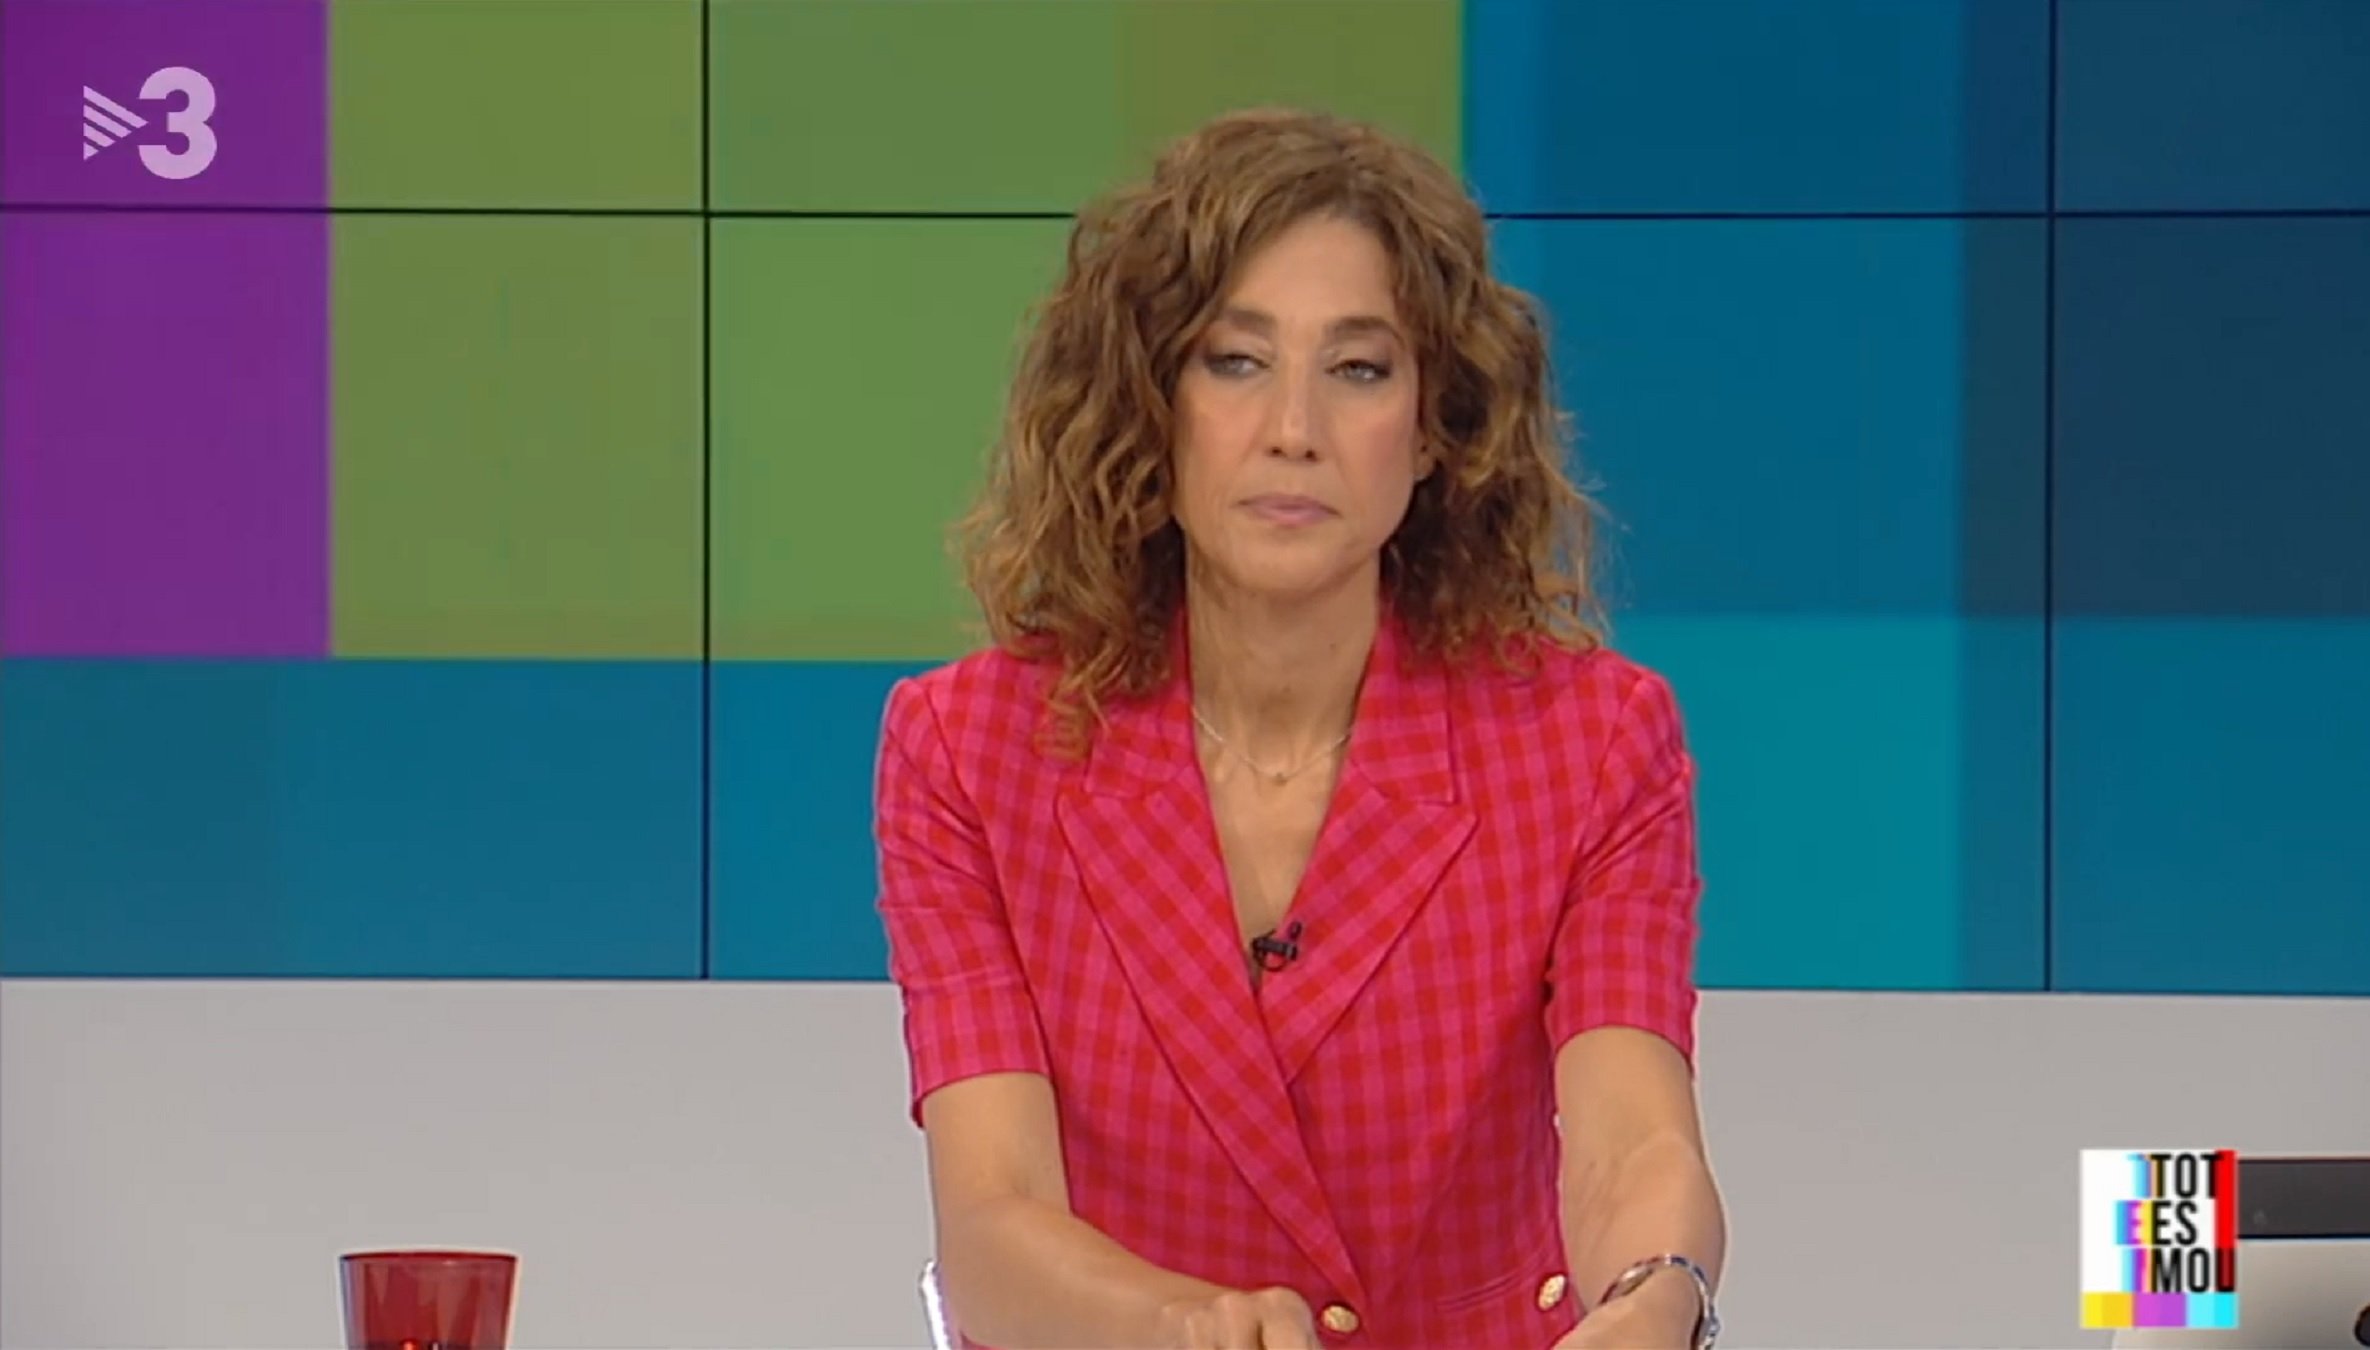 Helena García Melero amb els cabells molt curts: TV3 ensenya la imatge rara